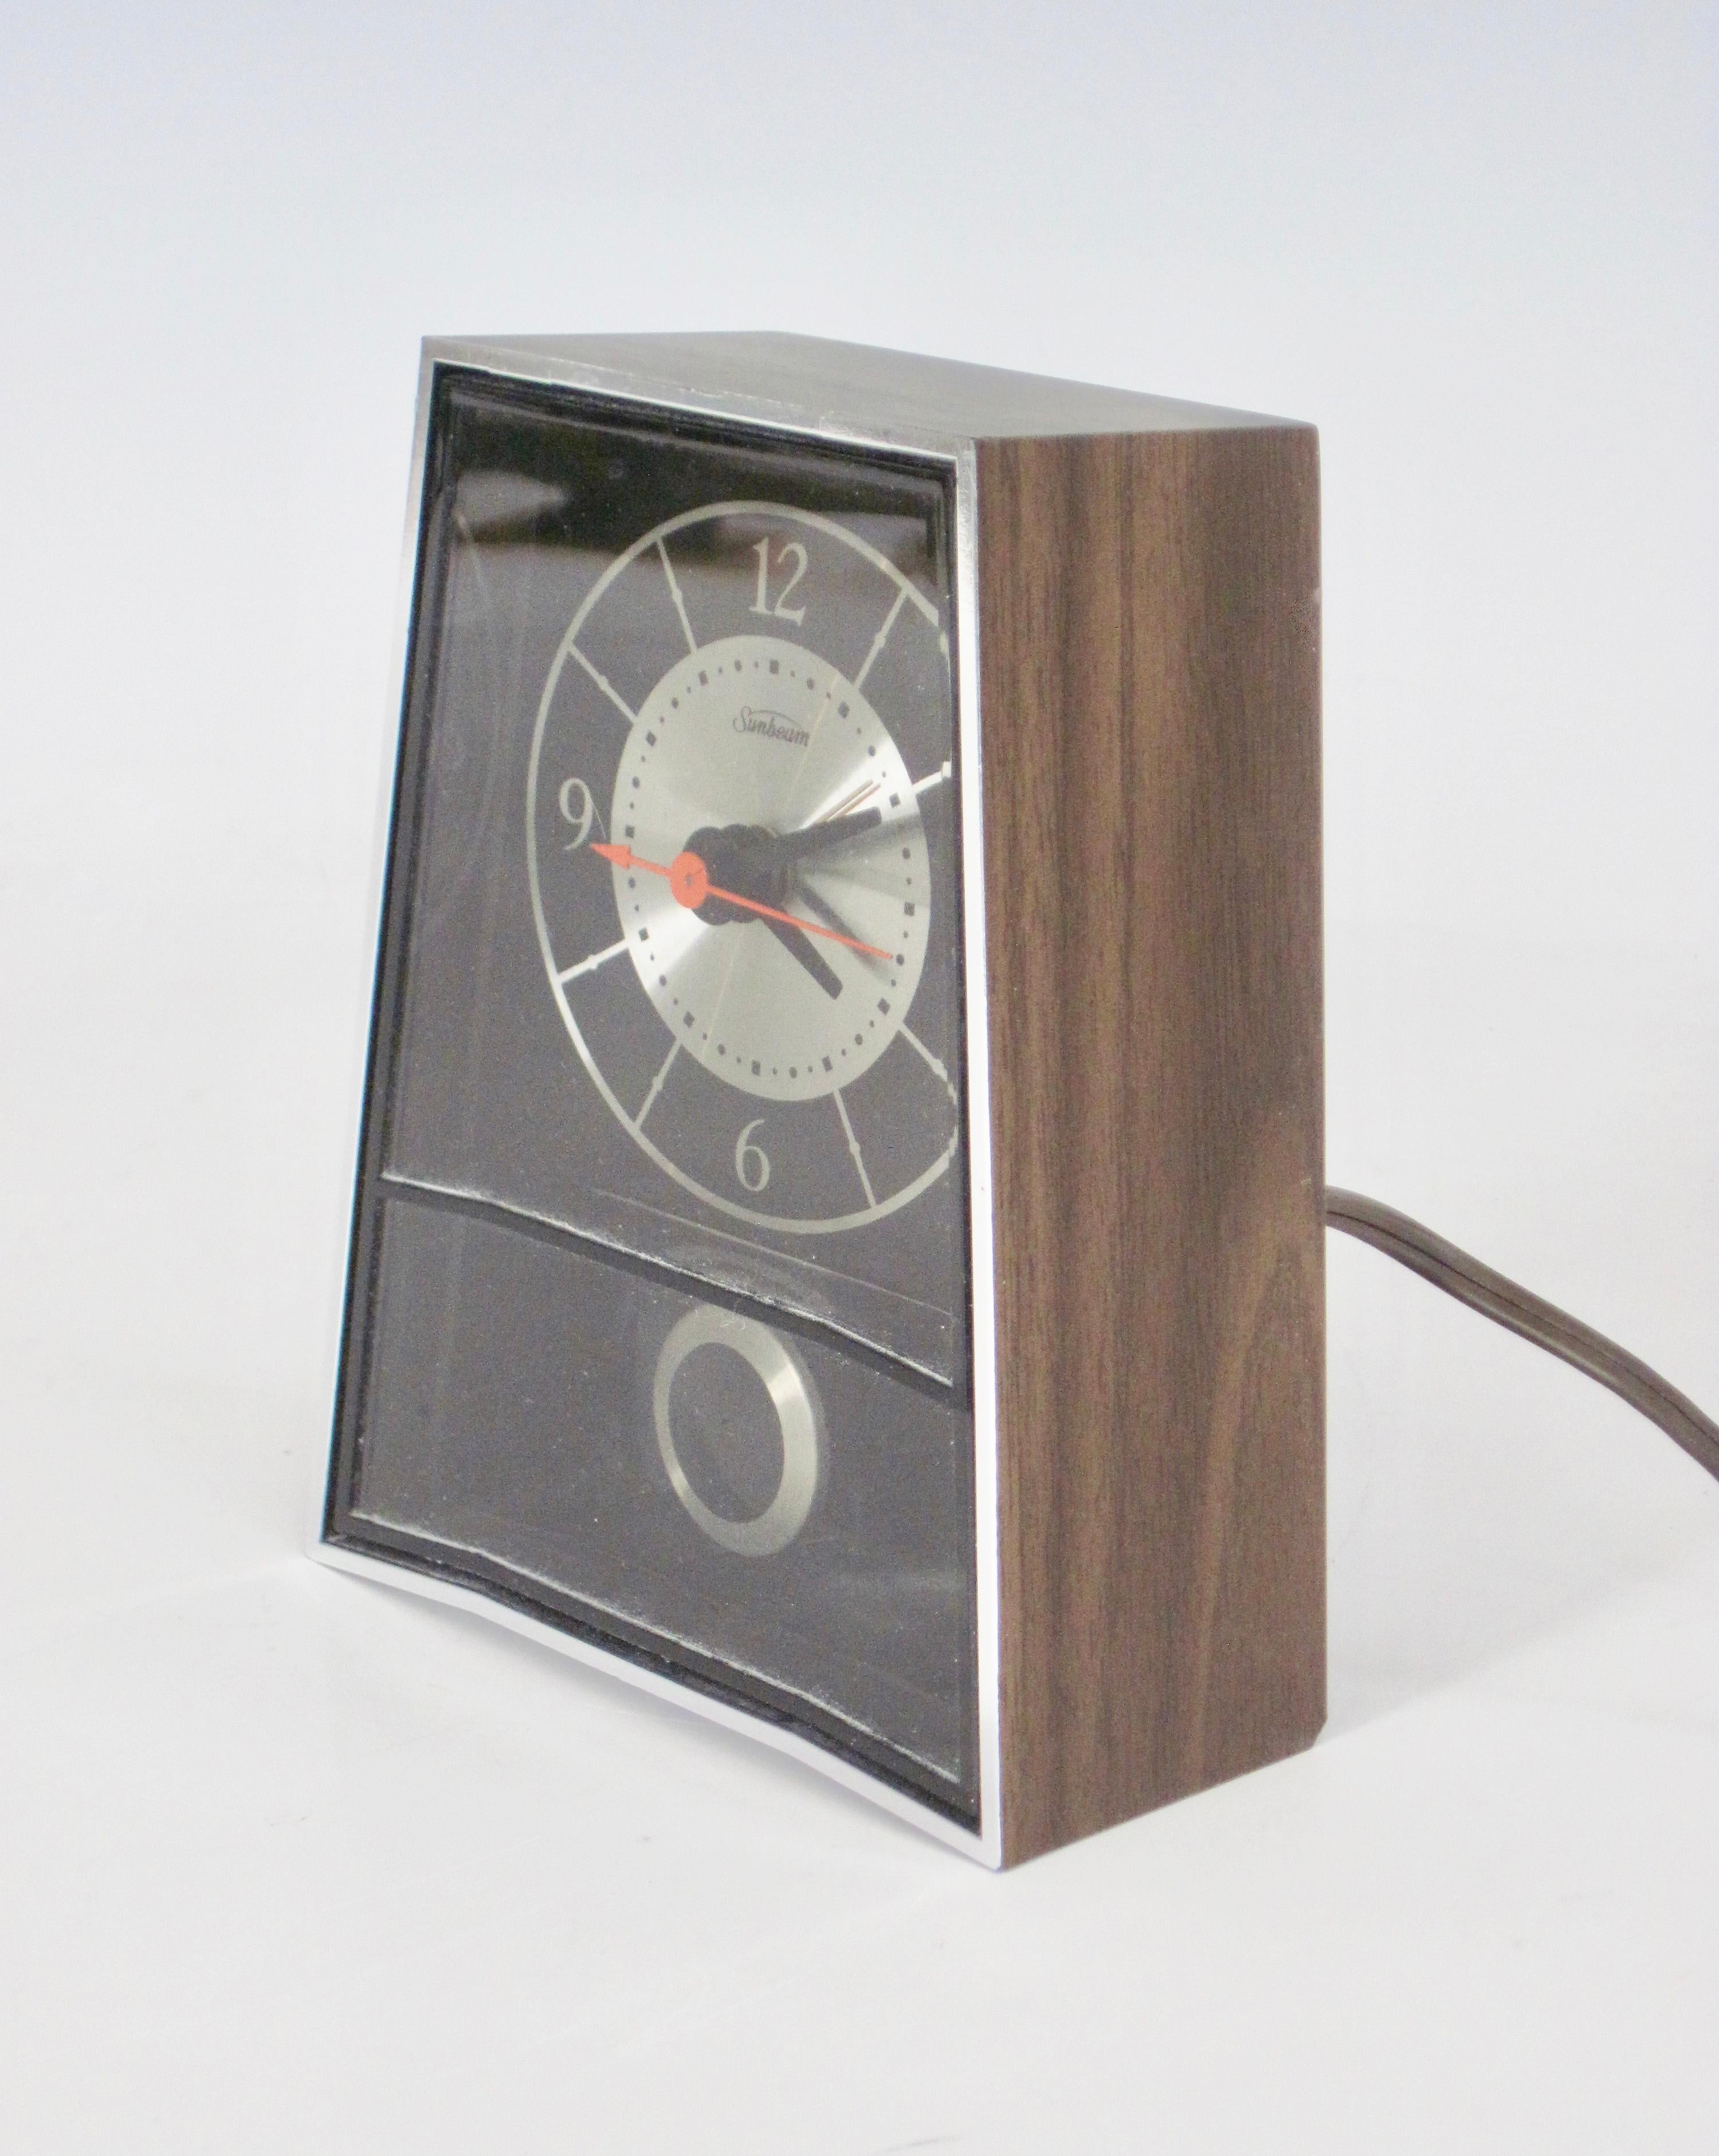 Pendule électrique Sunbeam des années 1970 avec trotteuse et alarme, catalogue # 80-165. Faux bois sur les côtés et le dessus, façade en acrylique.